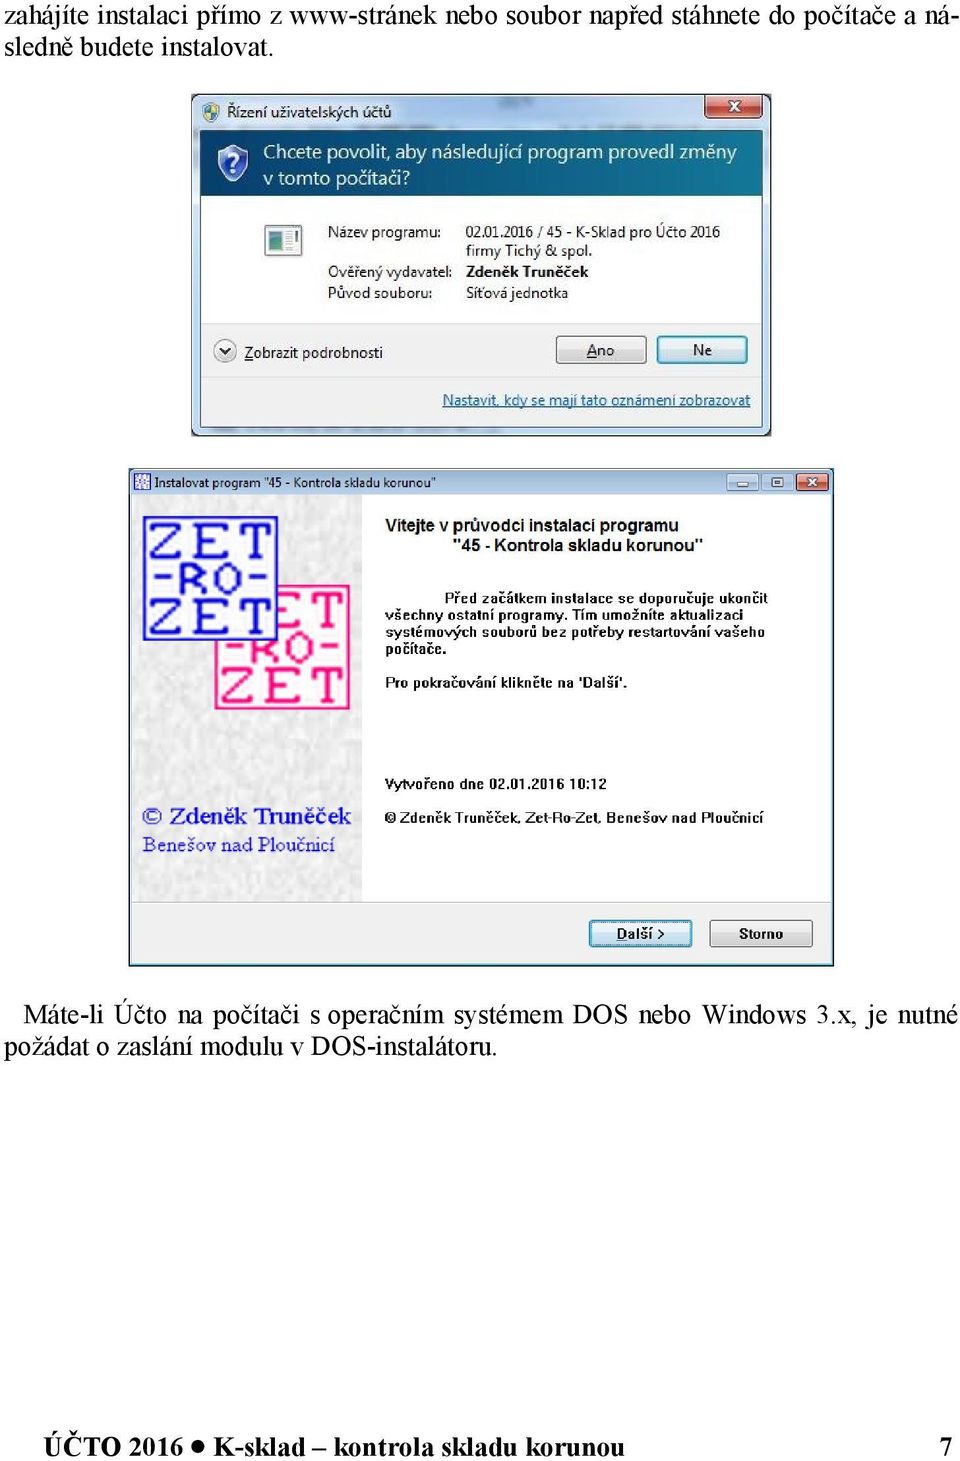 Máte-li Účto na počítači s operačním systémem DOS nebo Windows 3.